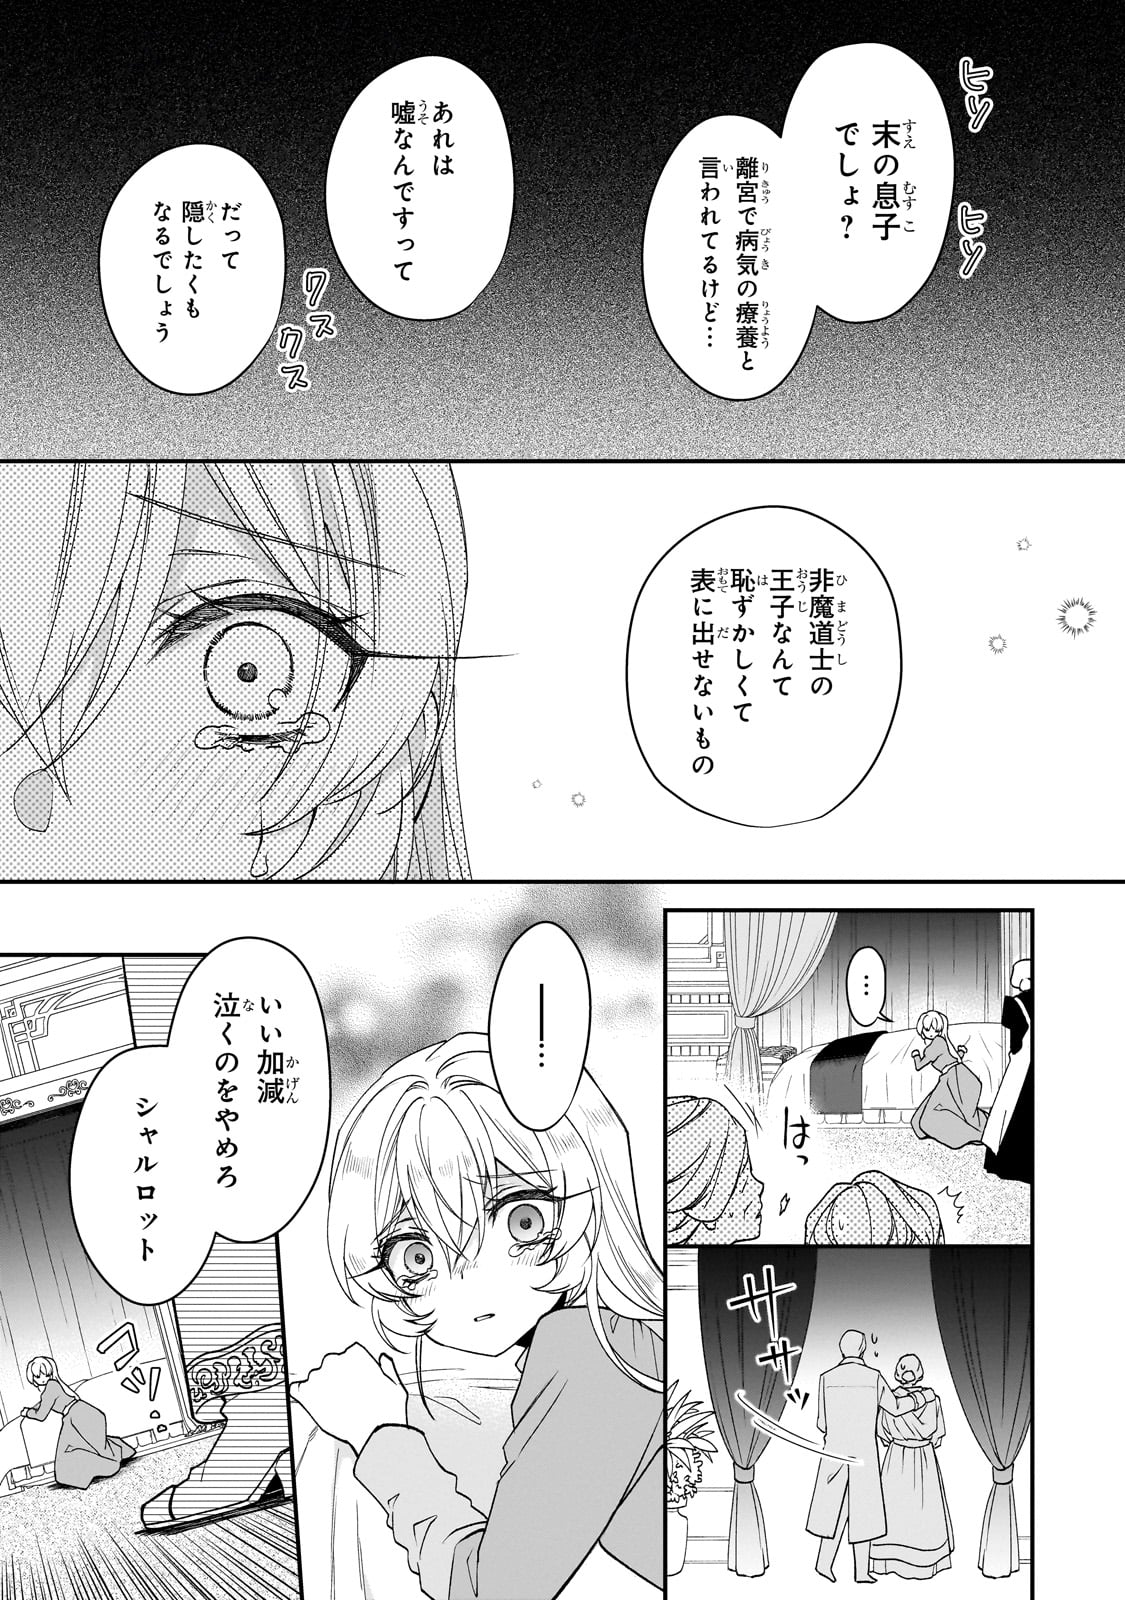 Bourei Madoushi no Hiroiage Hanayome - Chapter 29 - Page 3